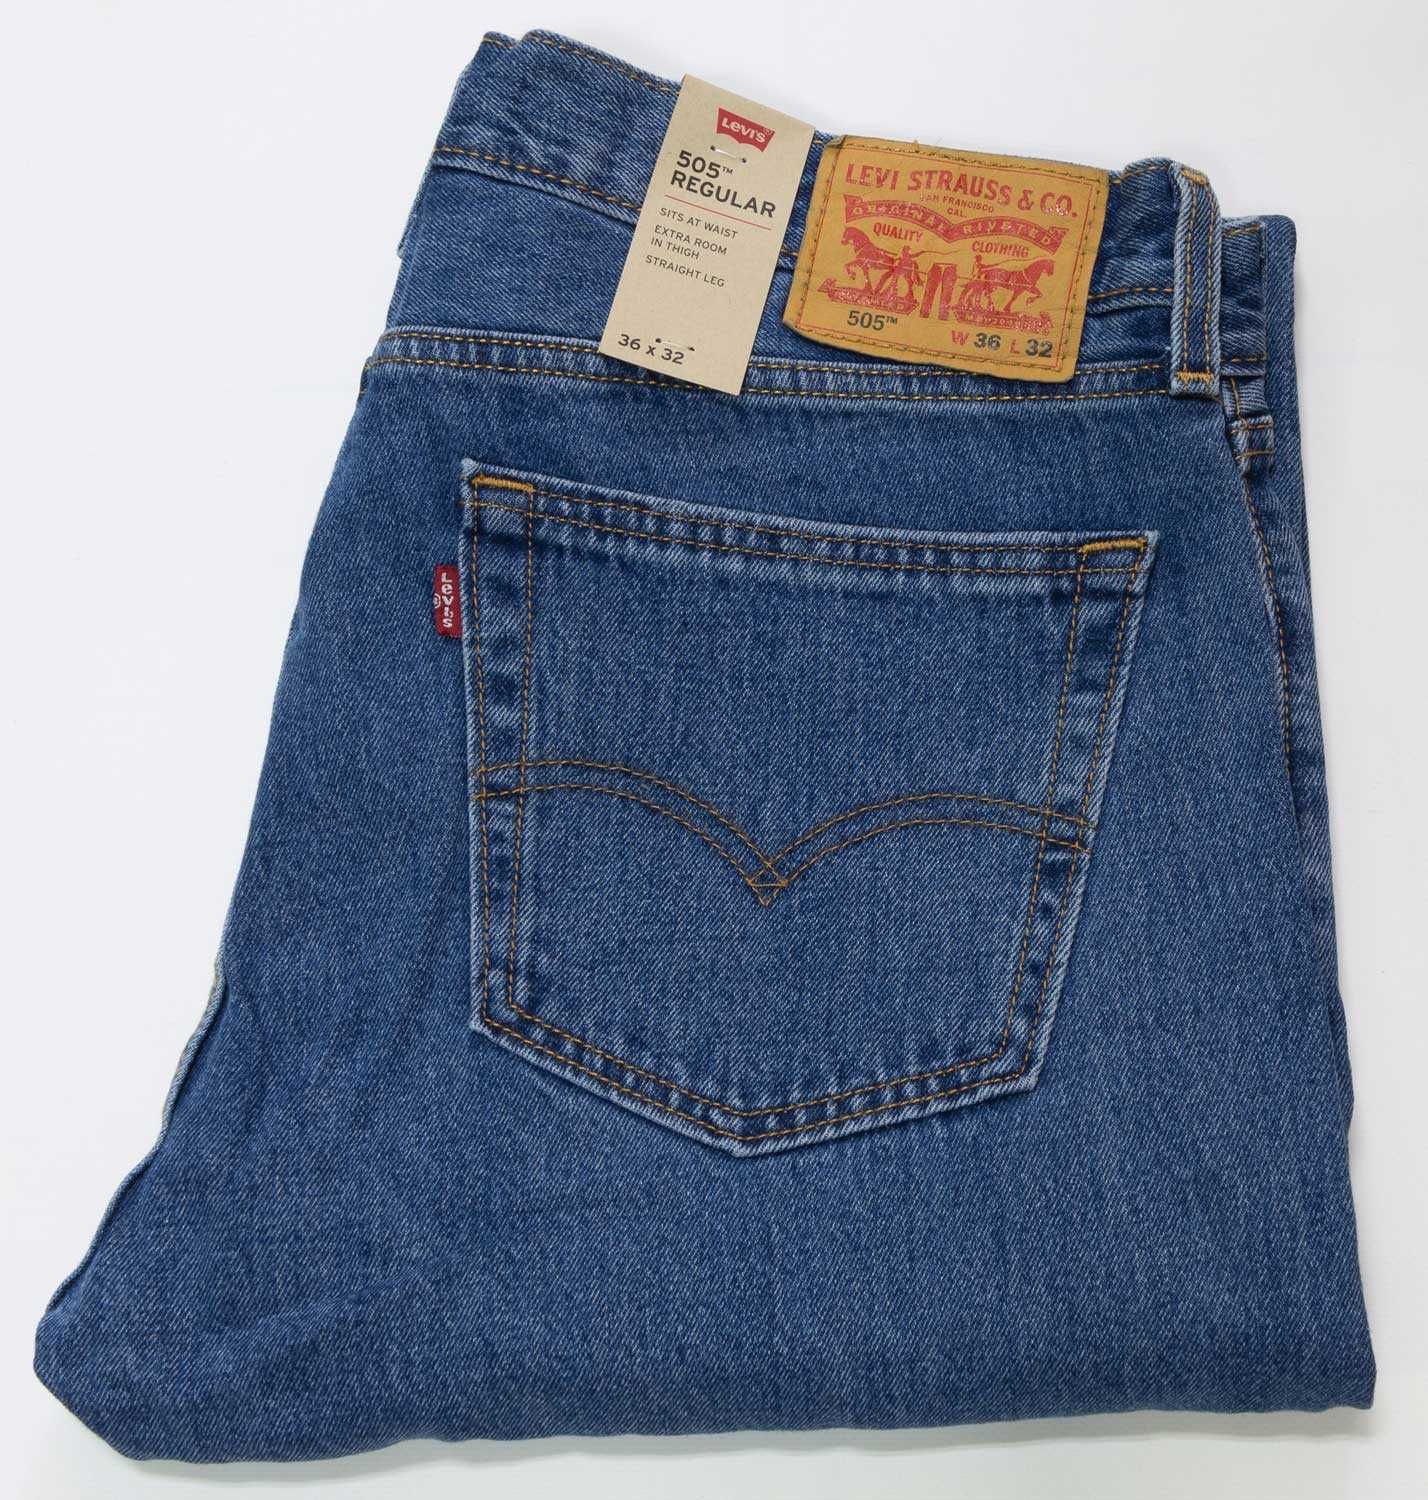 Мужские джинсы Levis 505 Medium Stonewash, 005054891 Левис, Ливайс США